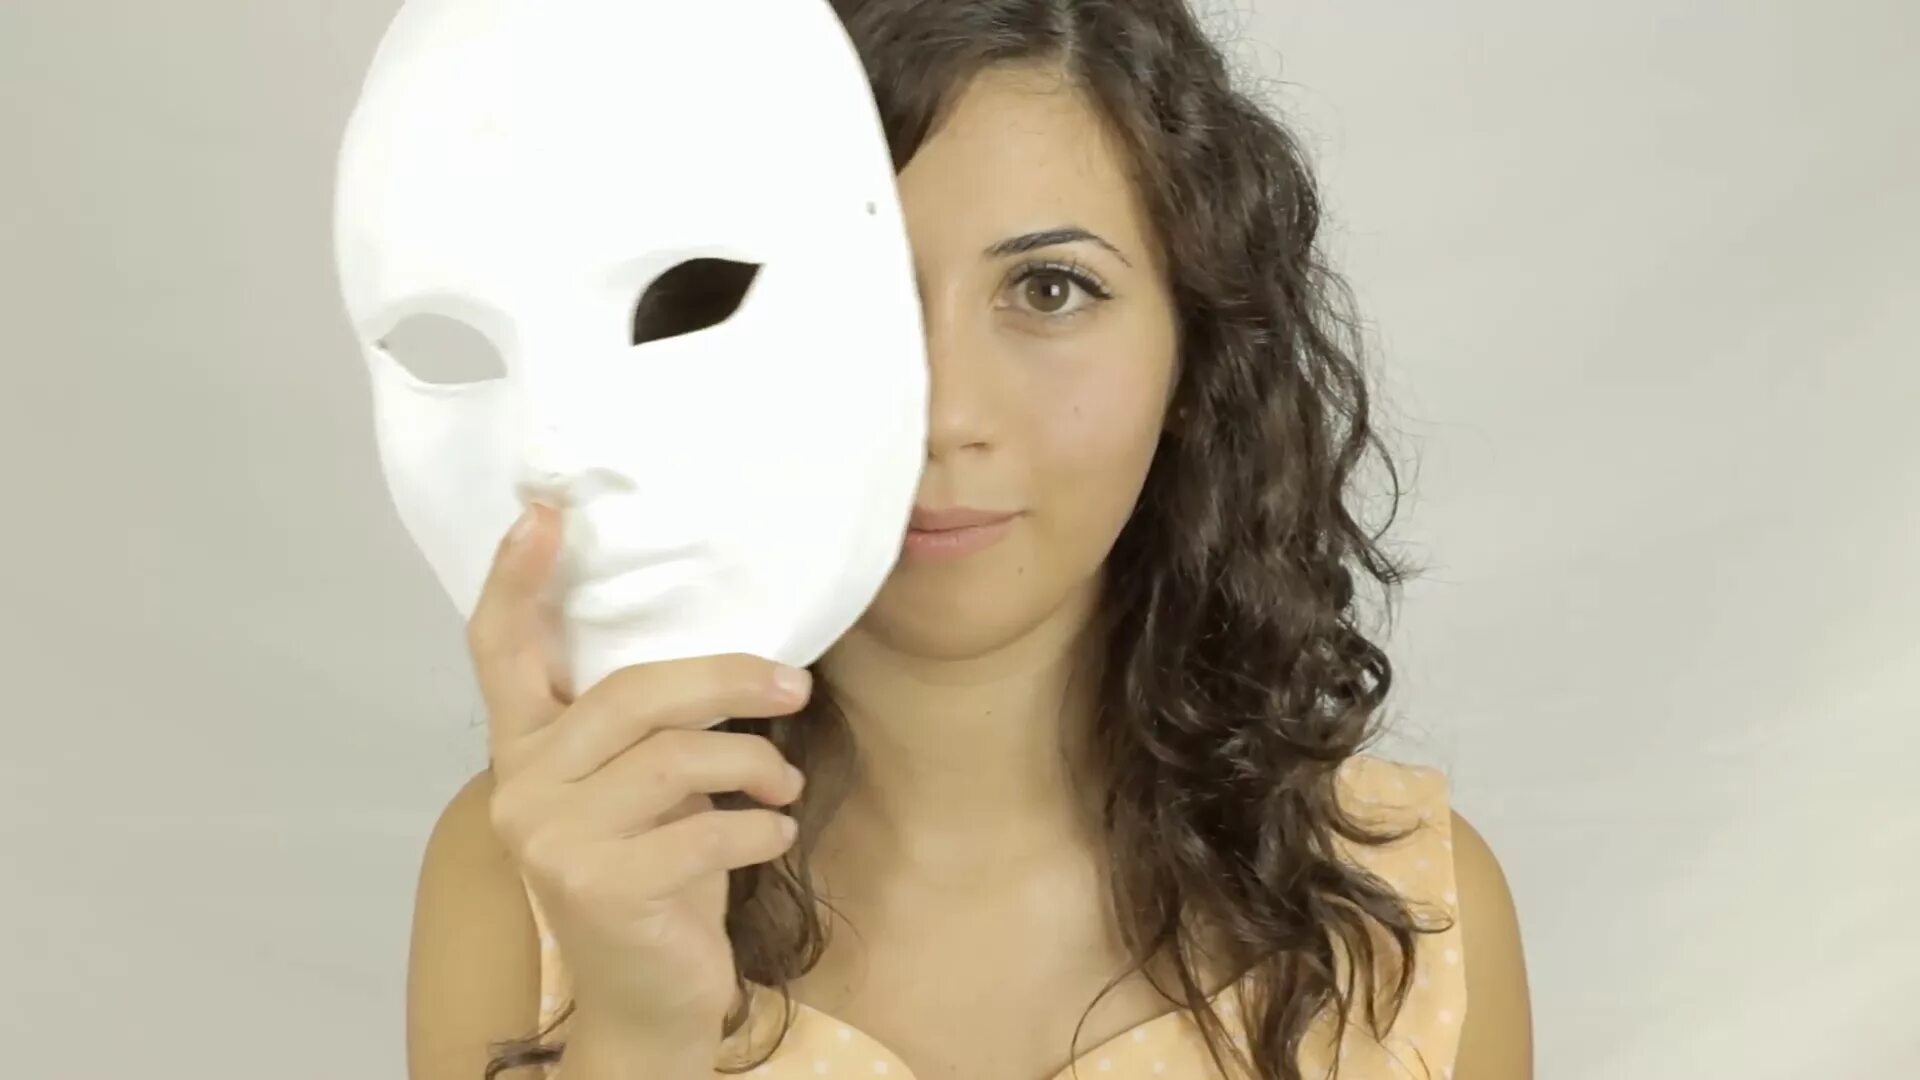 Фото жены маска. Маска. Маска женская. Роли маски. Маска женского лица.